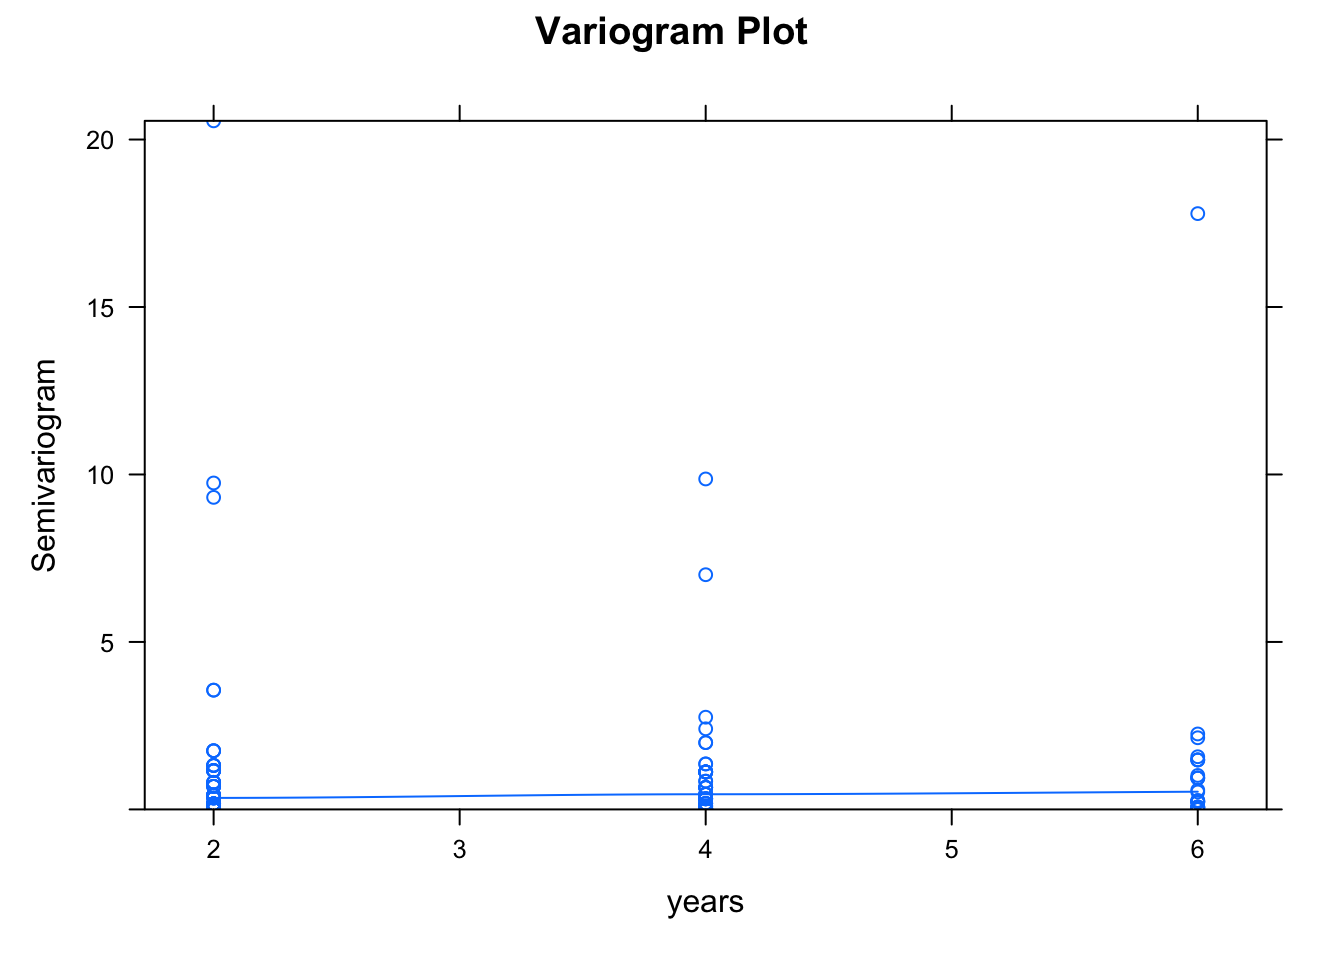 Variogram plot for assessing serial correlation in the fitted model.